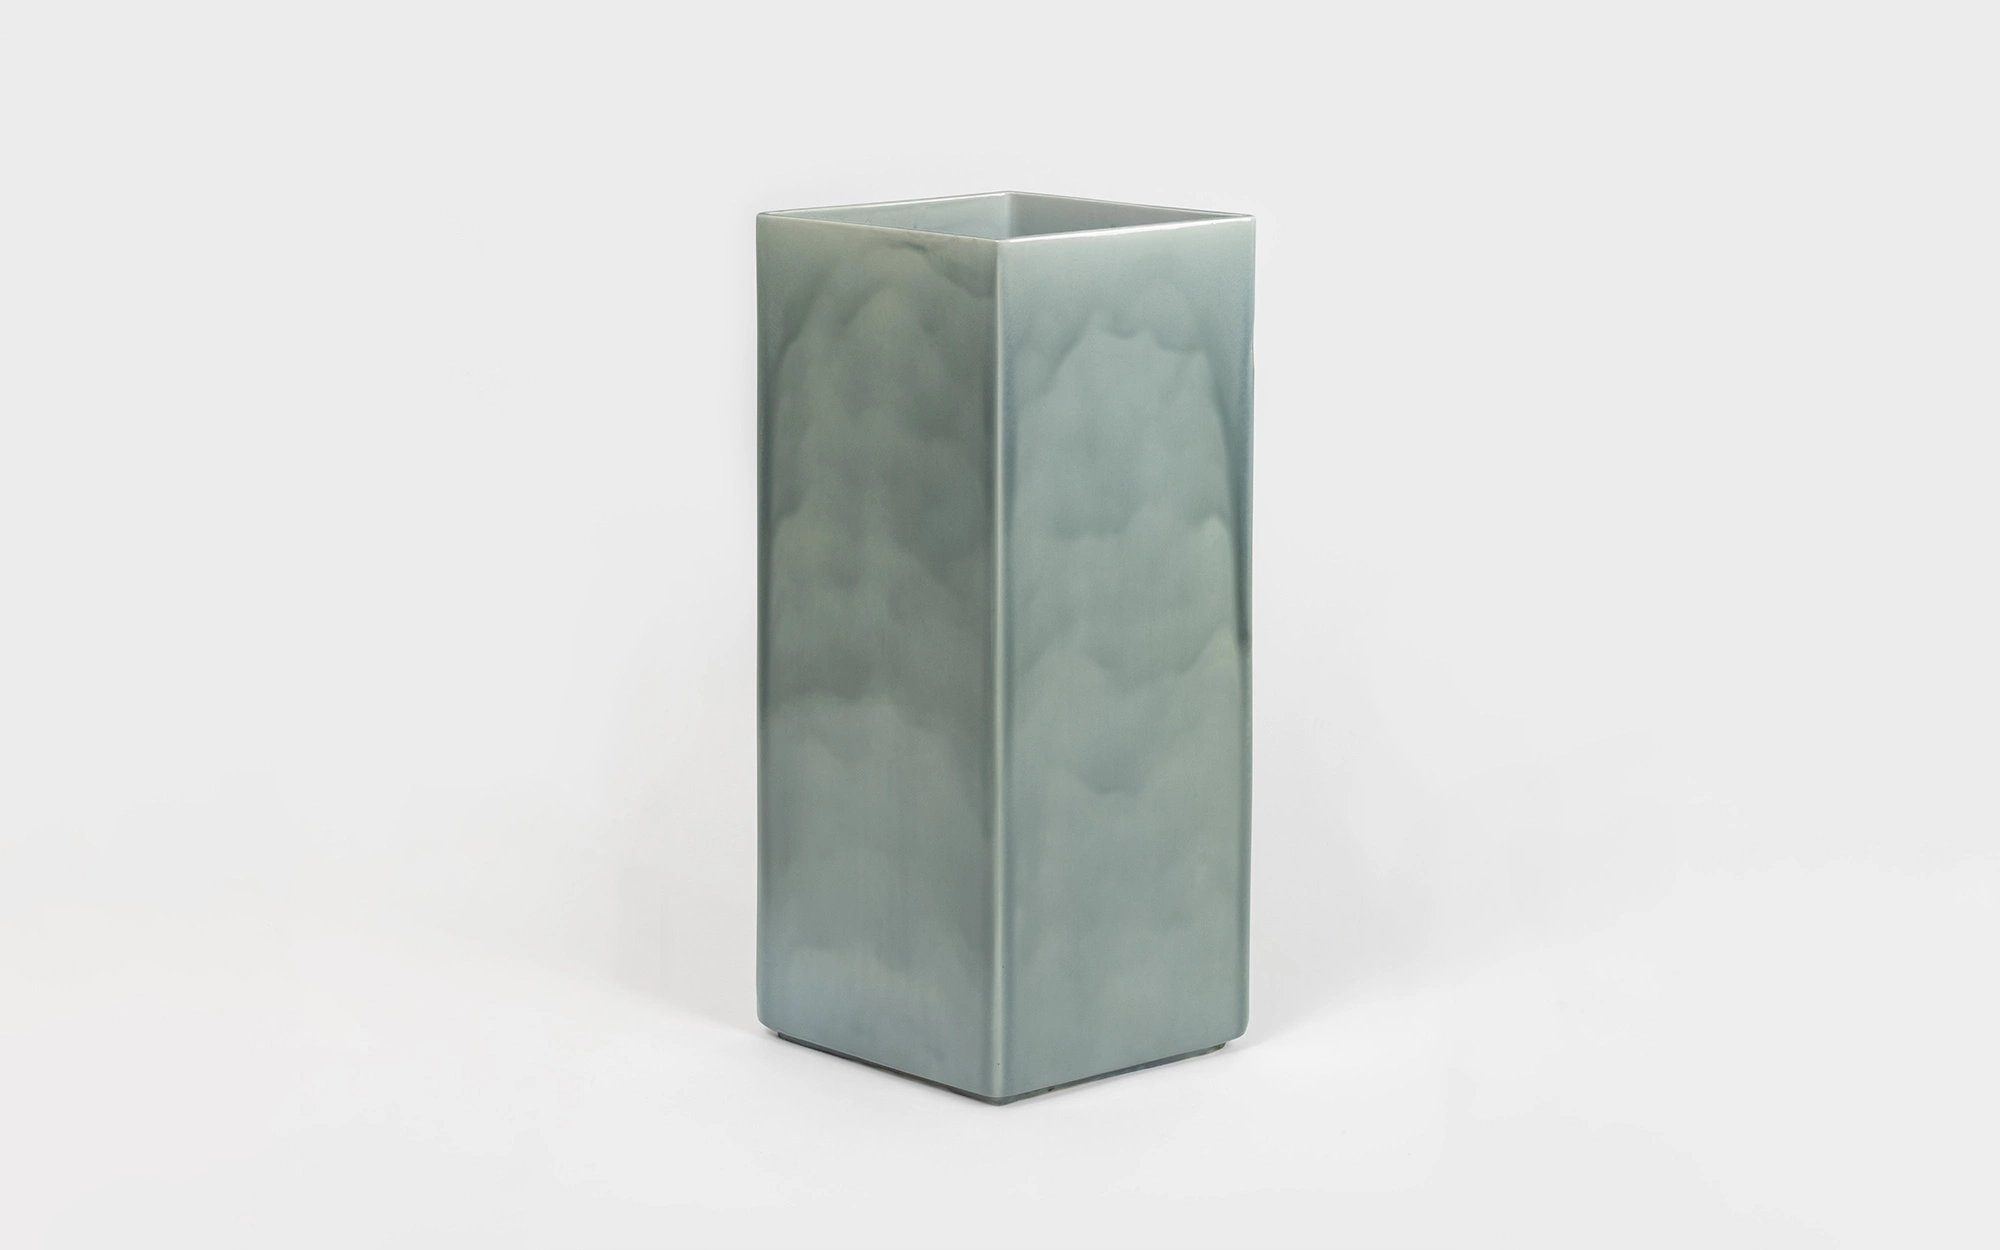 Vase Losange 84 blue - Ronan & Erwan Bouroullec - Coffee table - Galerie kreo